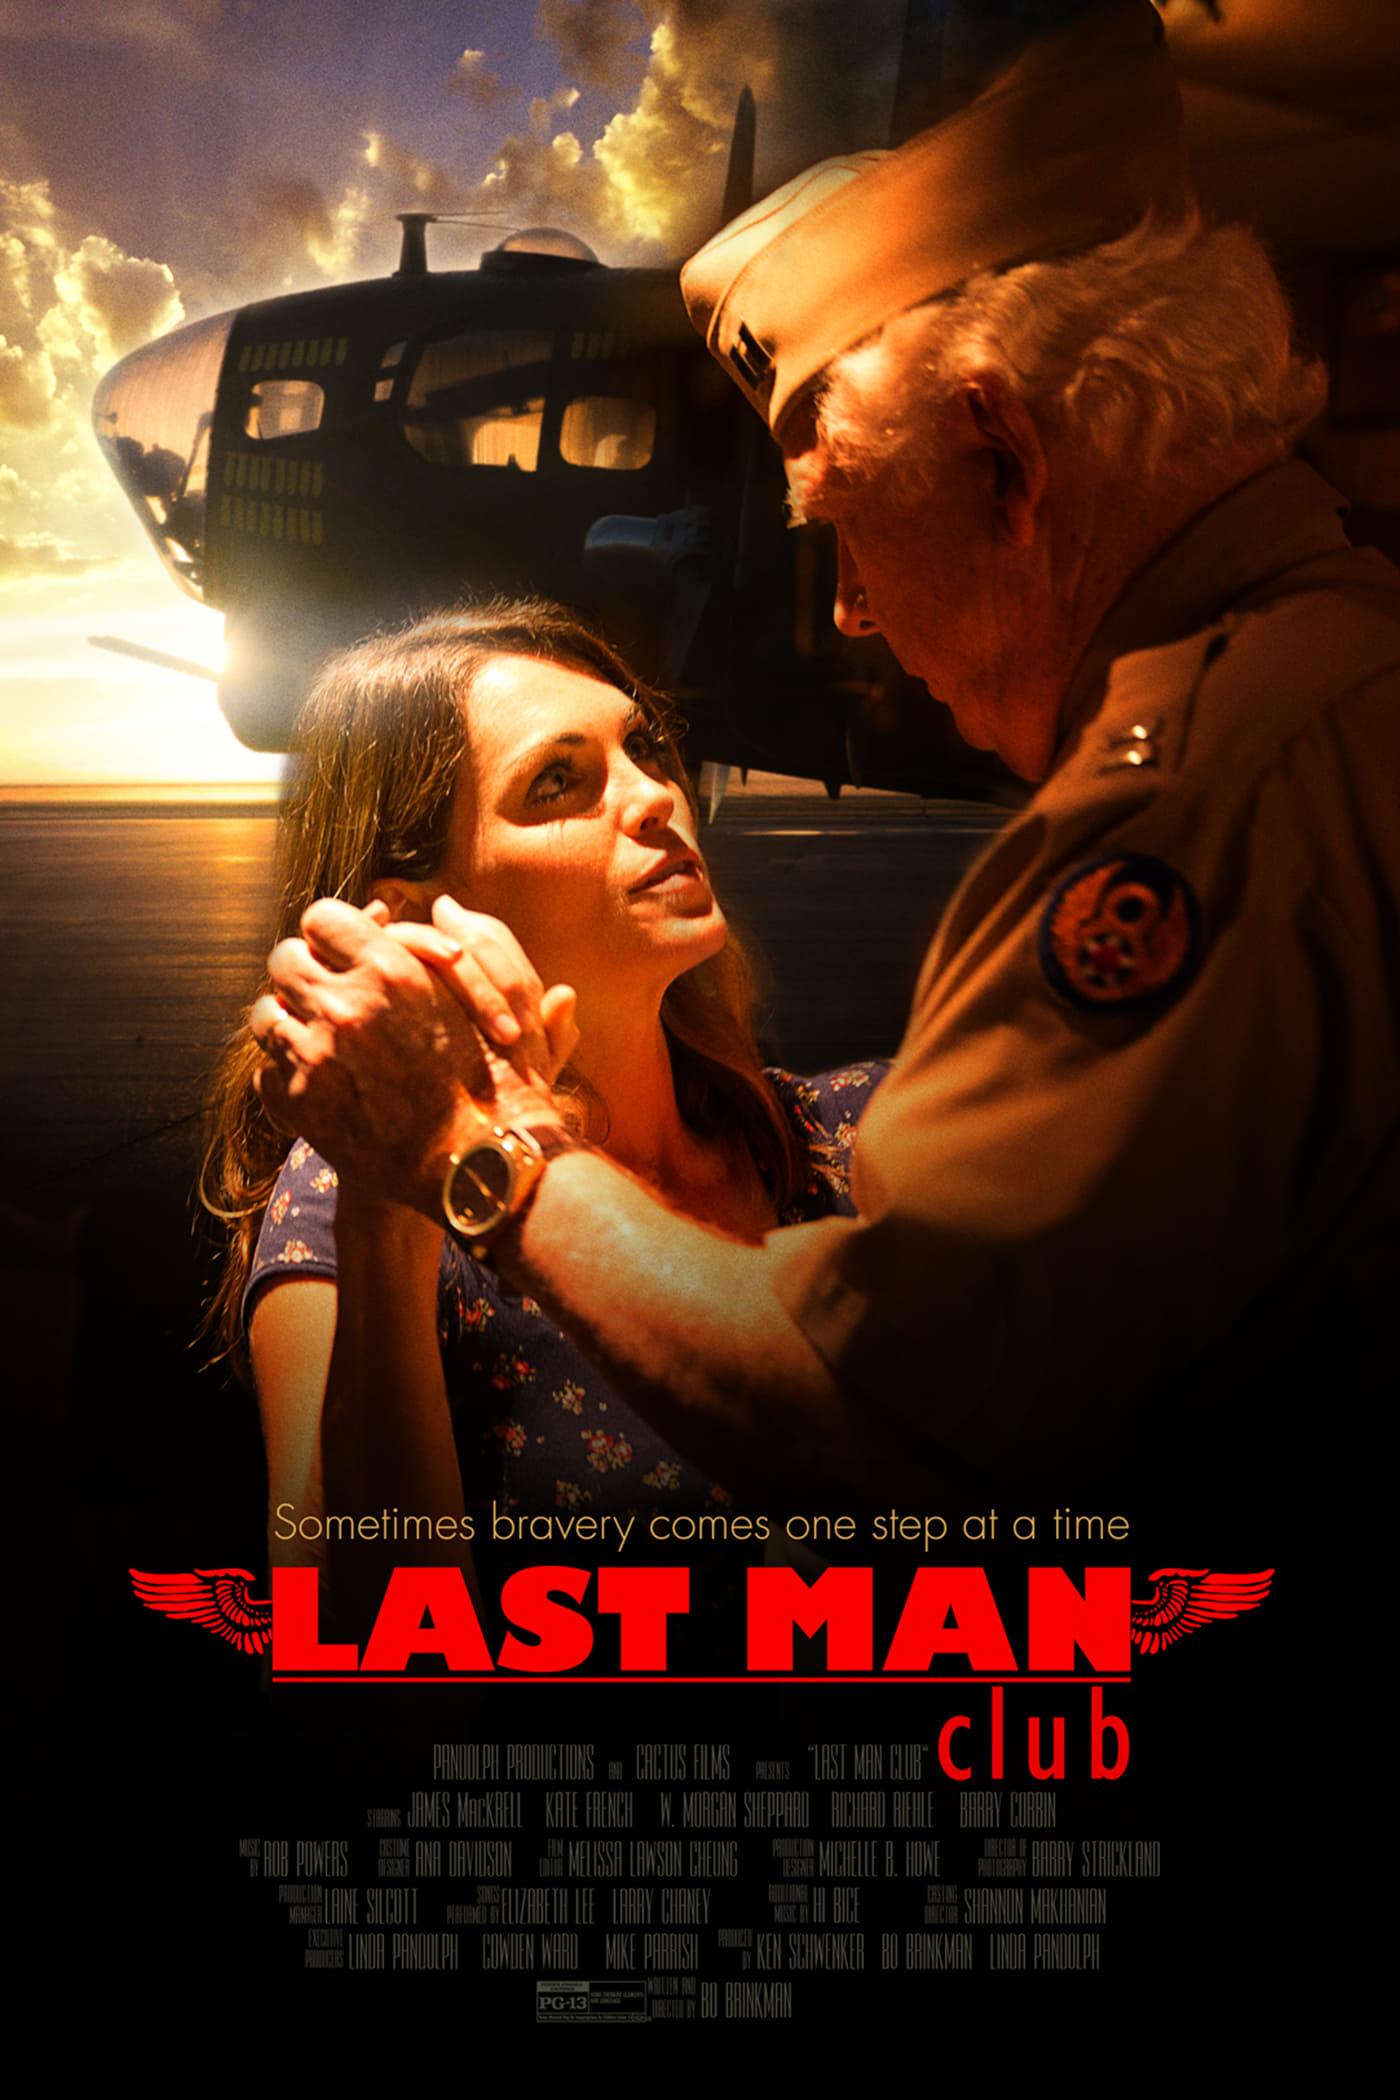 Last Man Club poster